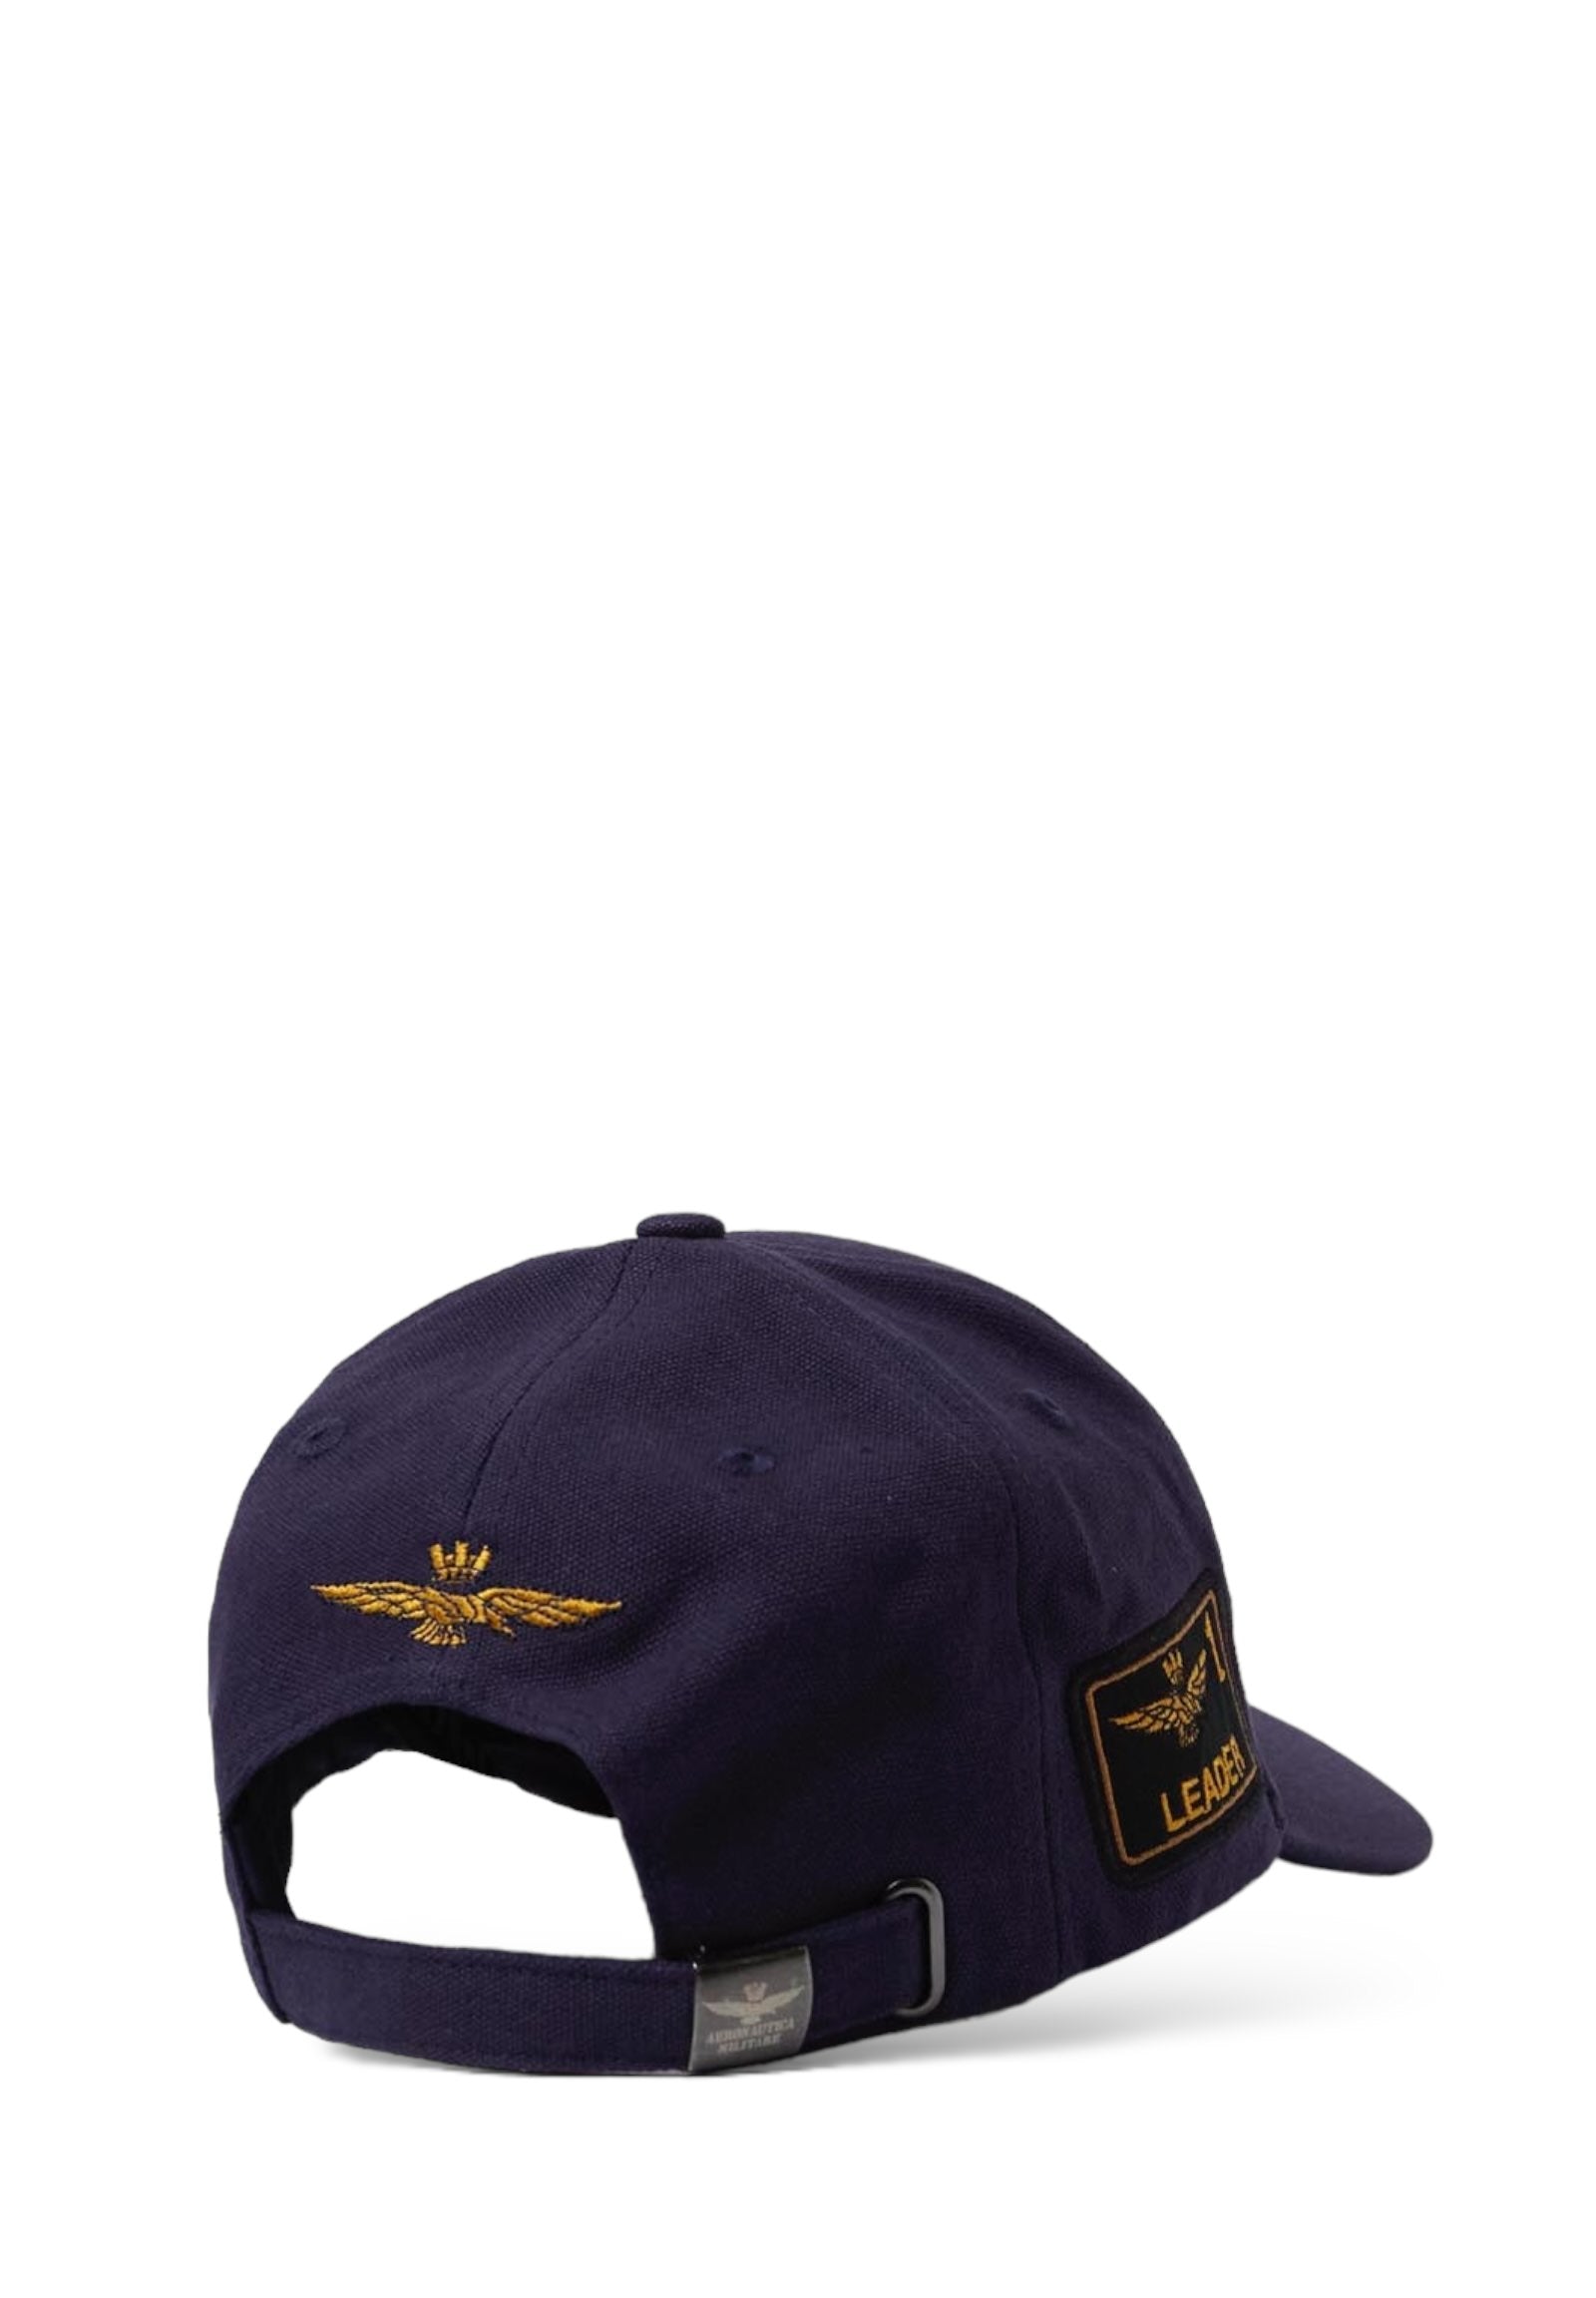 Aeronautica Militare Cappello Da Baseball 241ha1150ct3043 Blu Navy